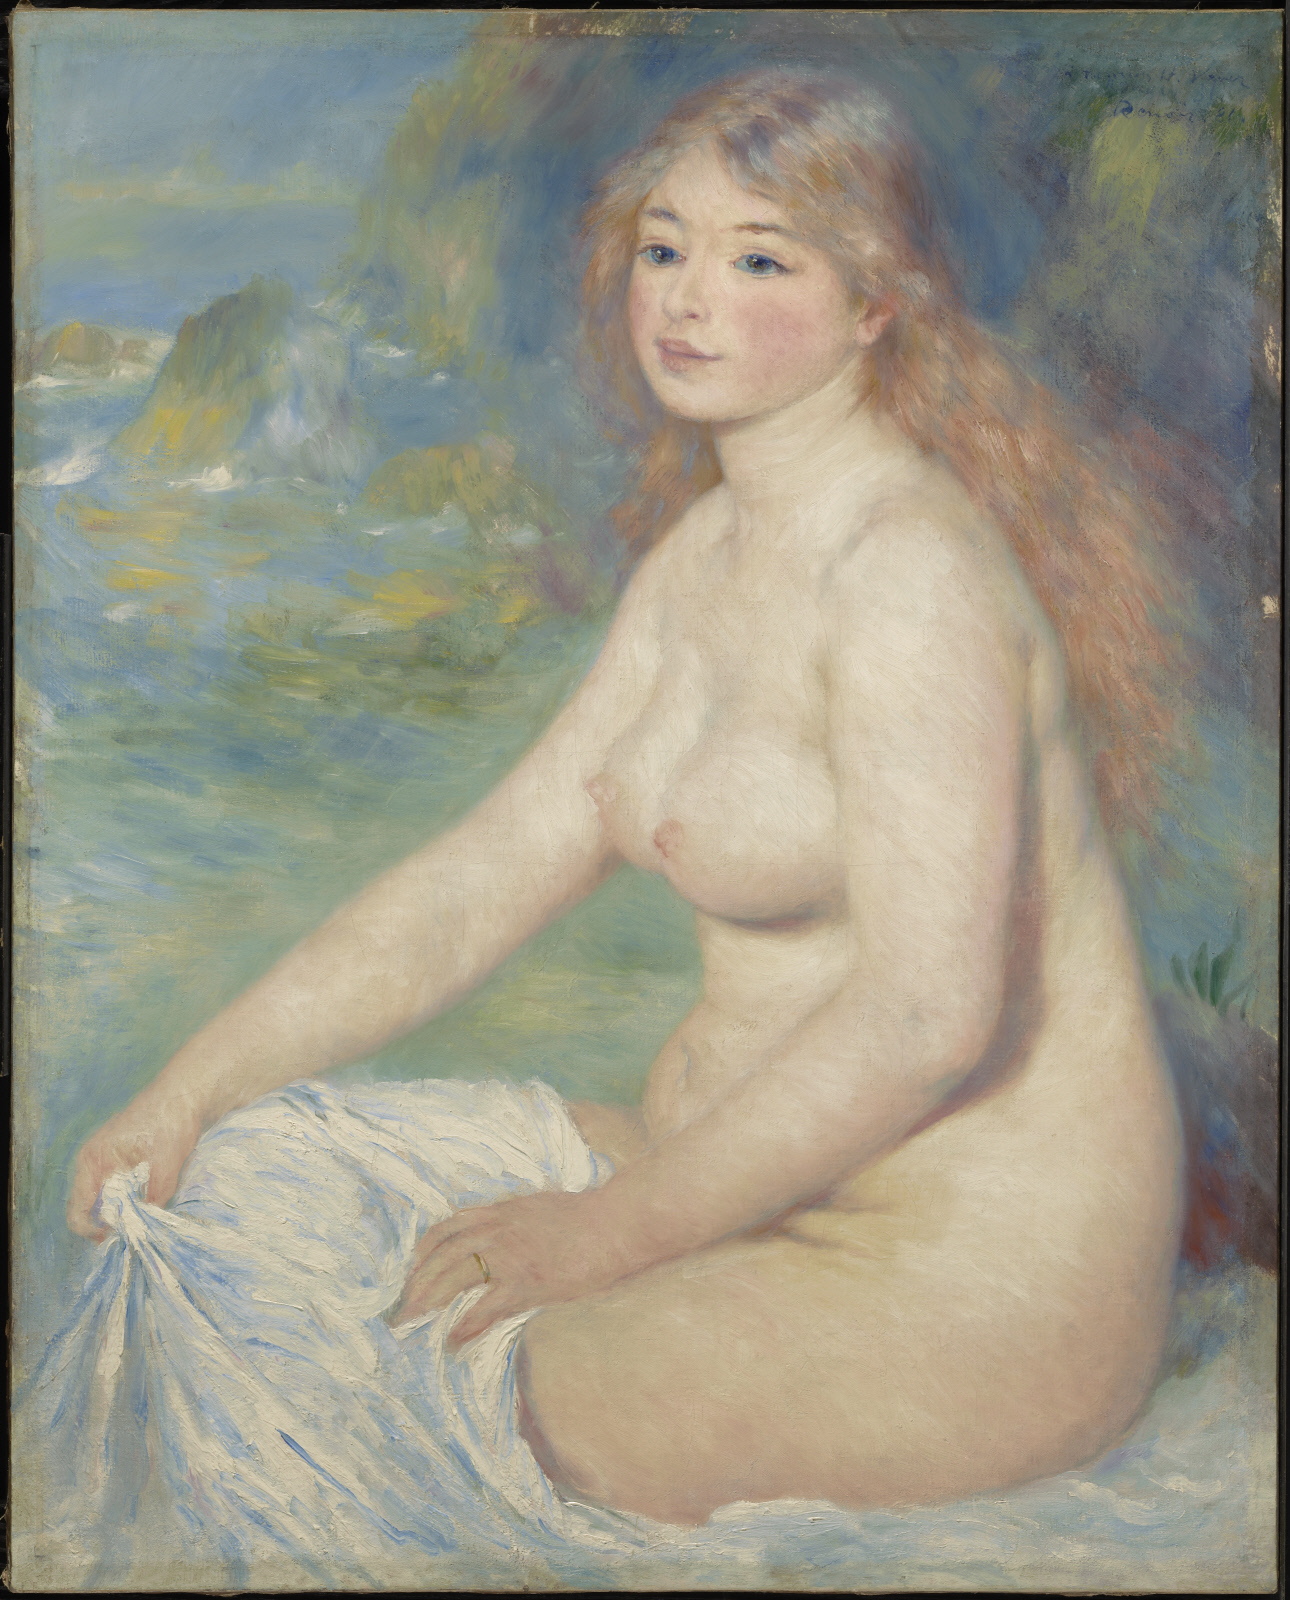 Yüzmeye Giden Sarışın by Pierre-Auguste Renoir - 1881 - 81.6 x 65.4 cm 